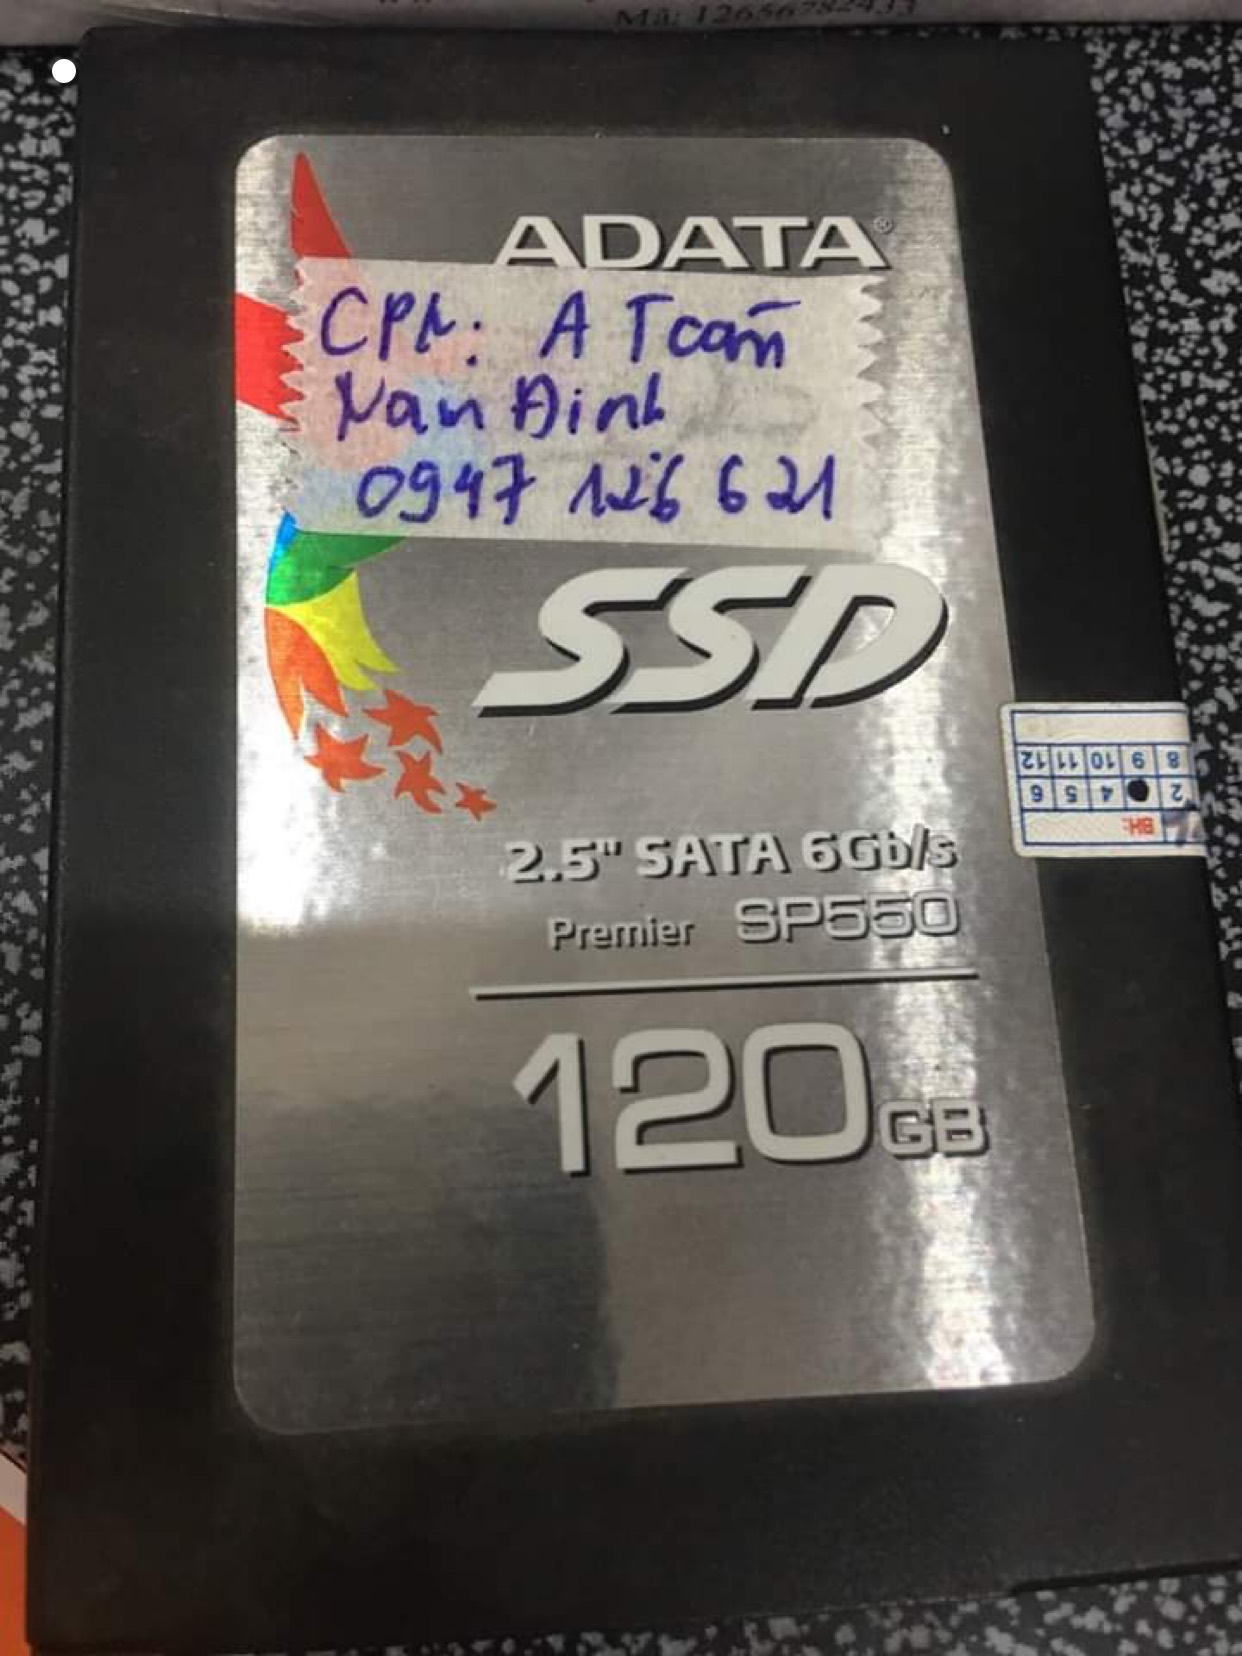 Cứu dữ liệu ổ cứng SSD Adata 120GB không nhận tại Nam Định 09/07/2020 - cuumaytinh